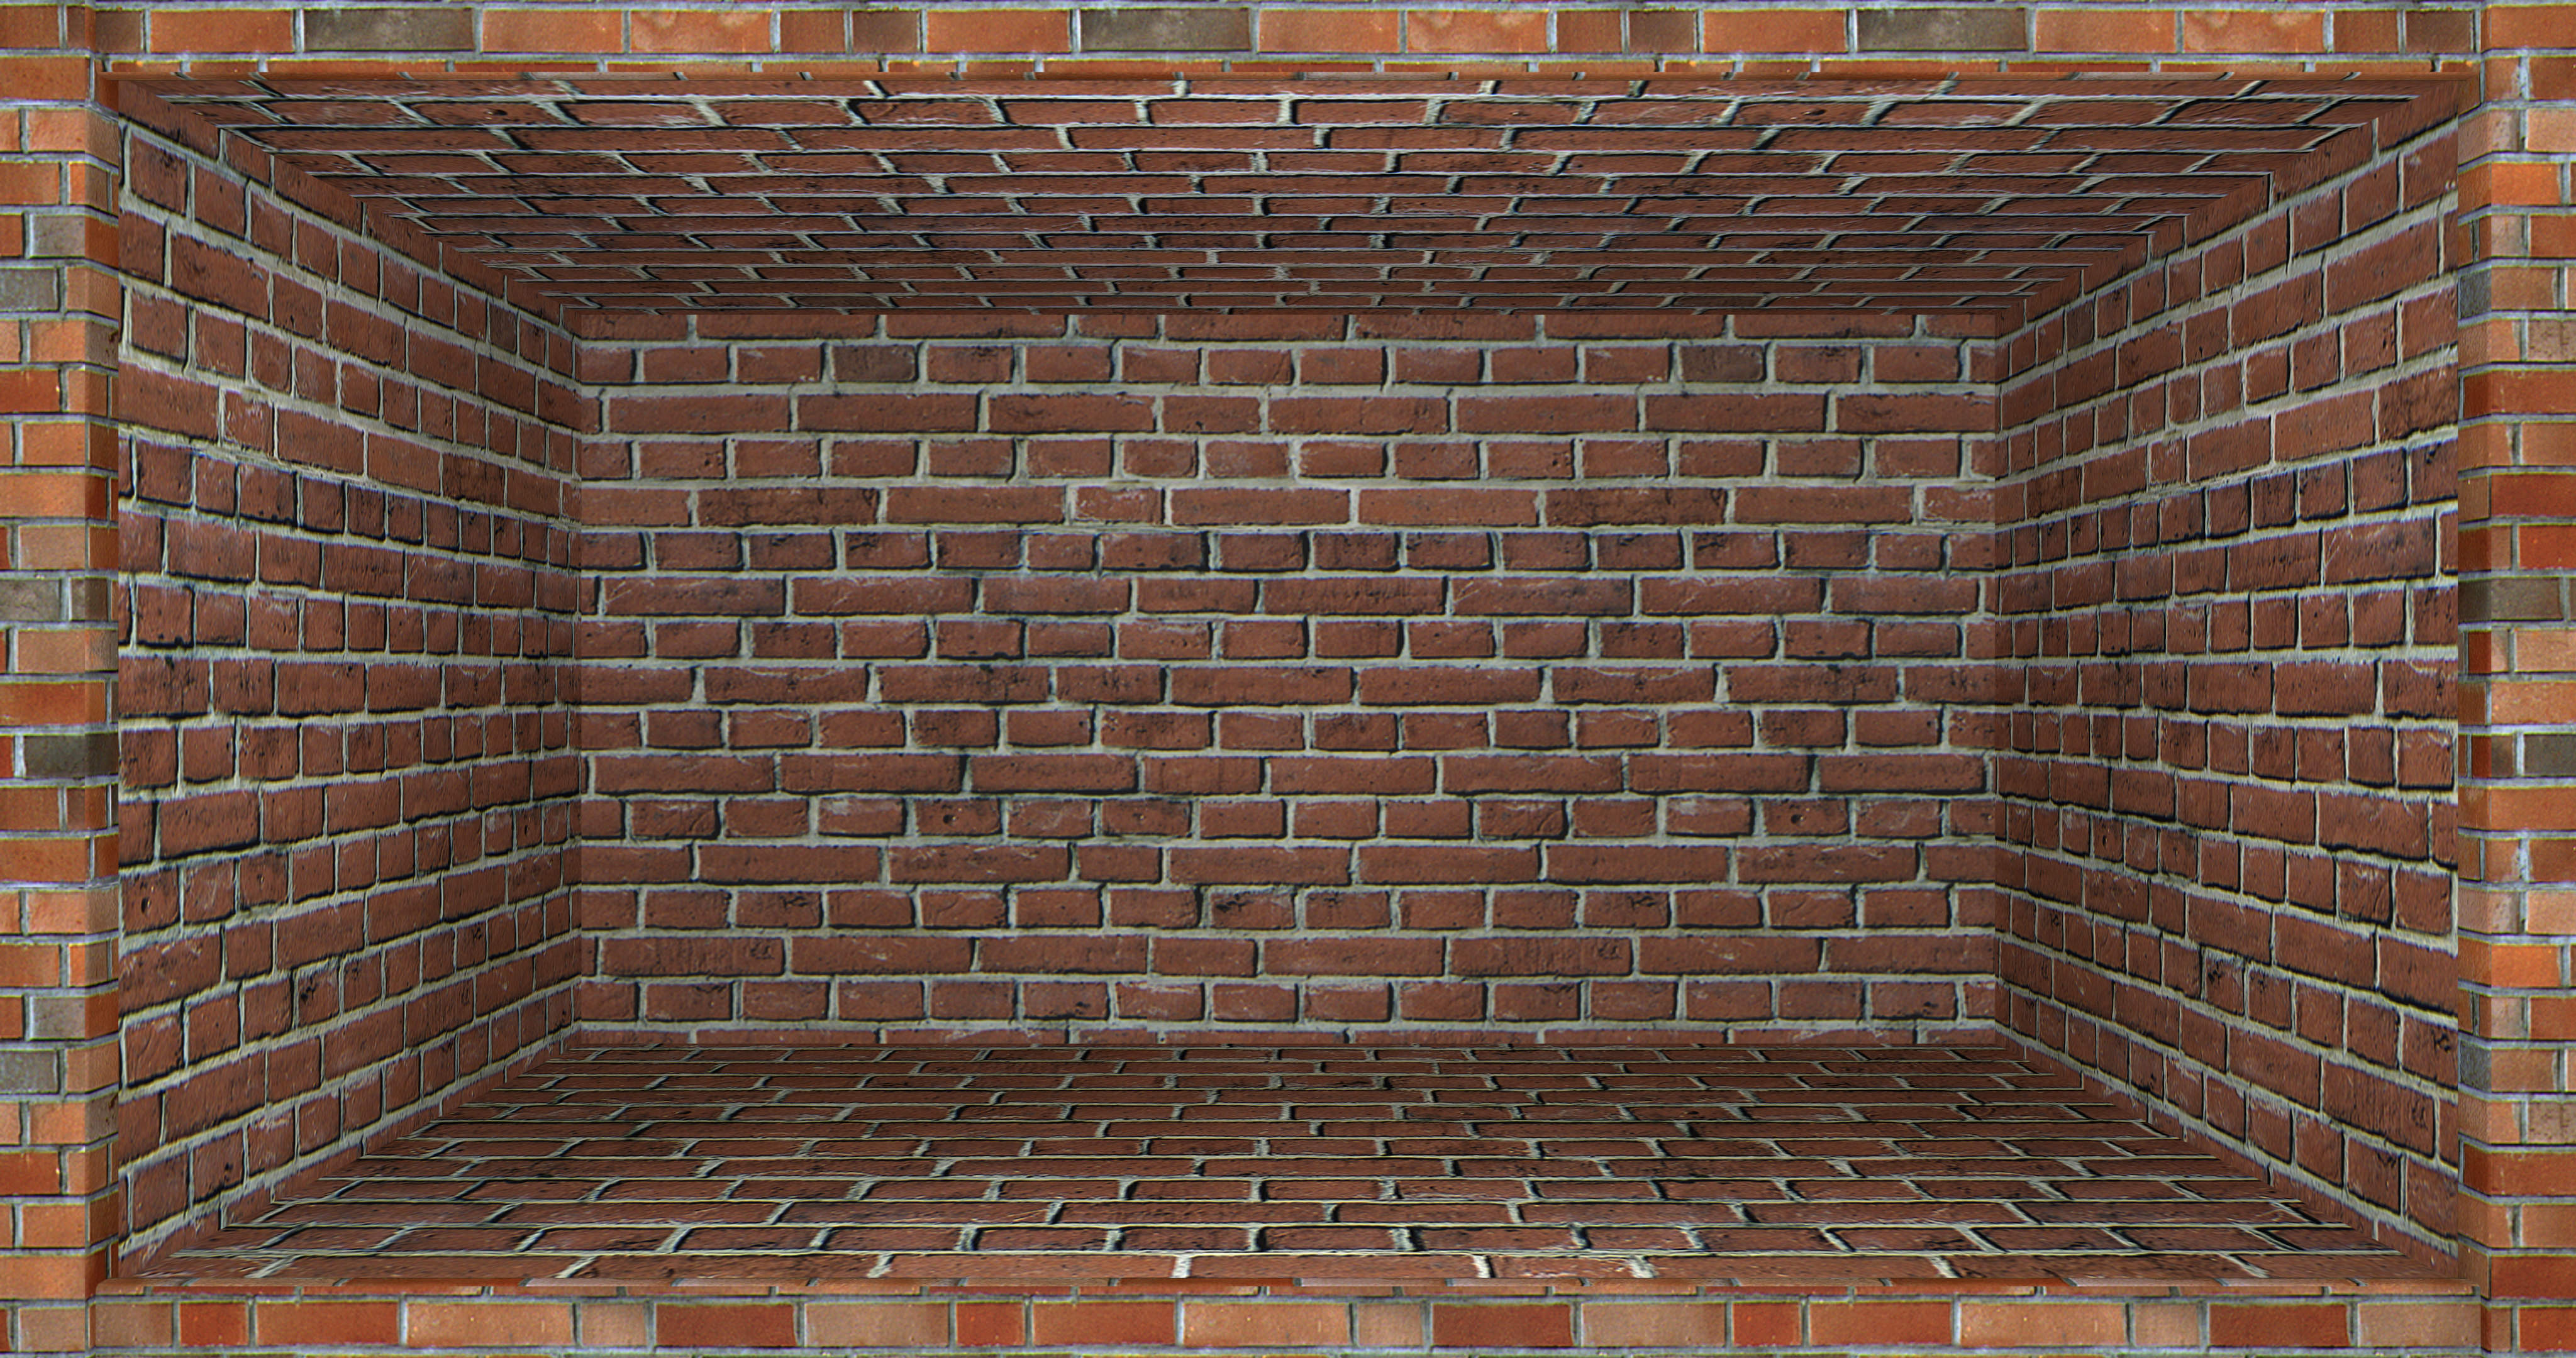 Brick HD PNG Transparent Brick HD.PNG Images. | PlusPNG